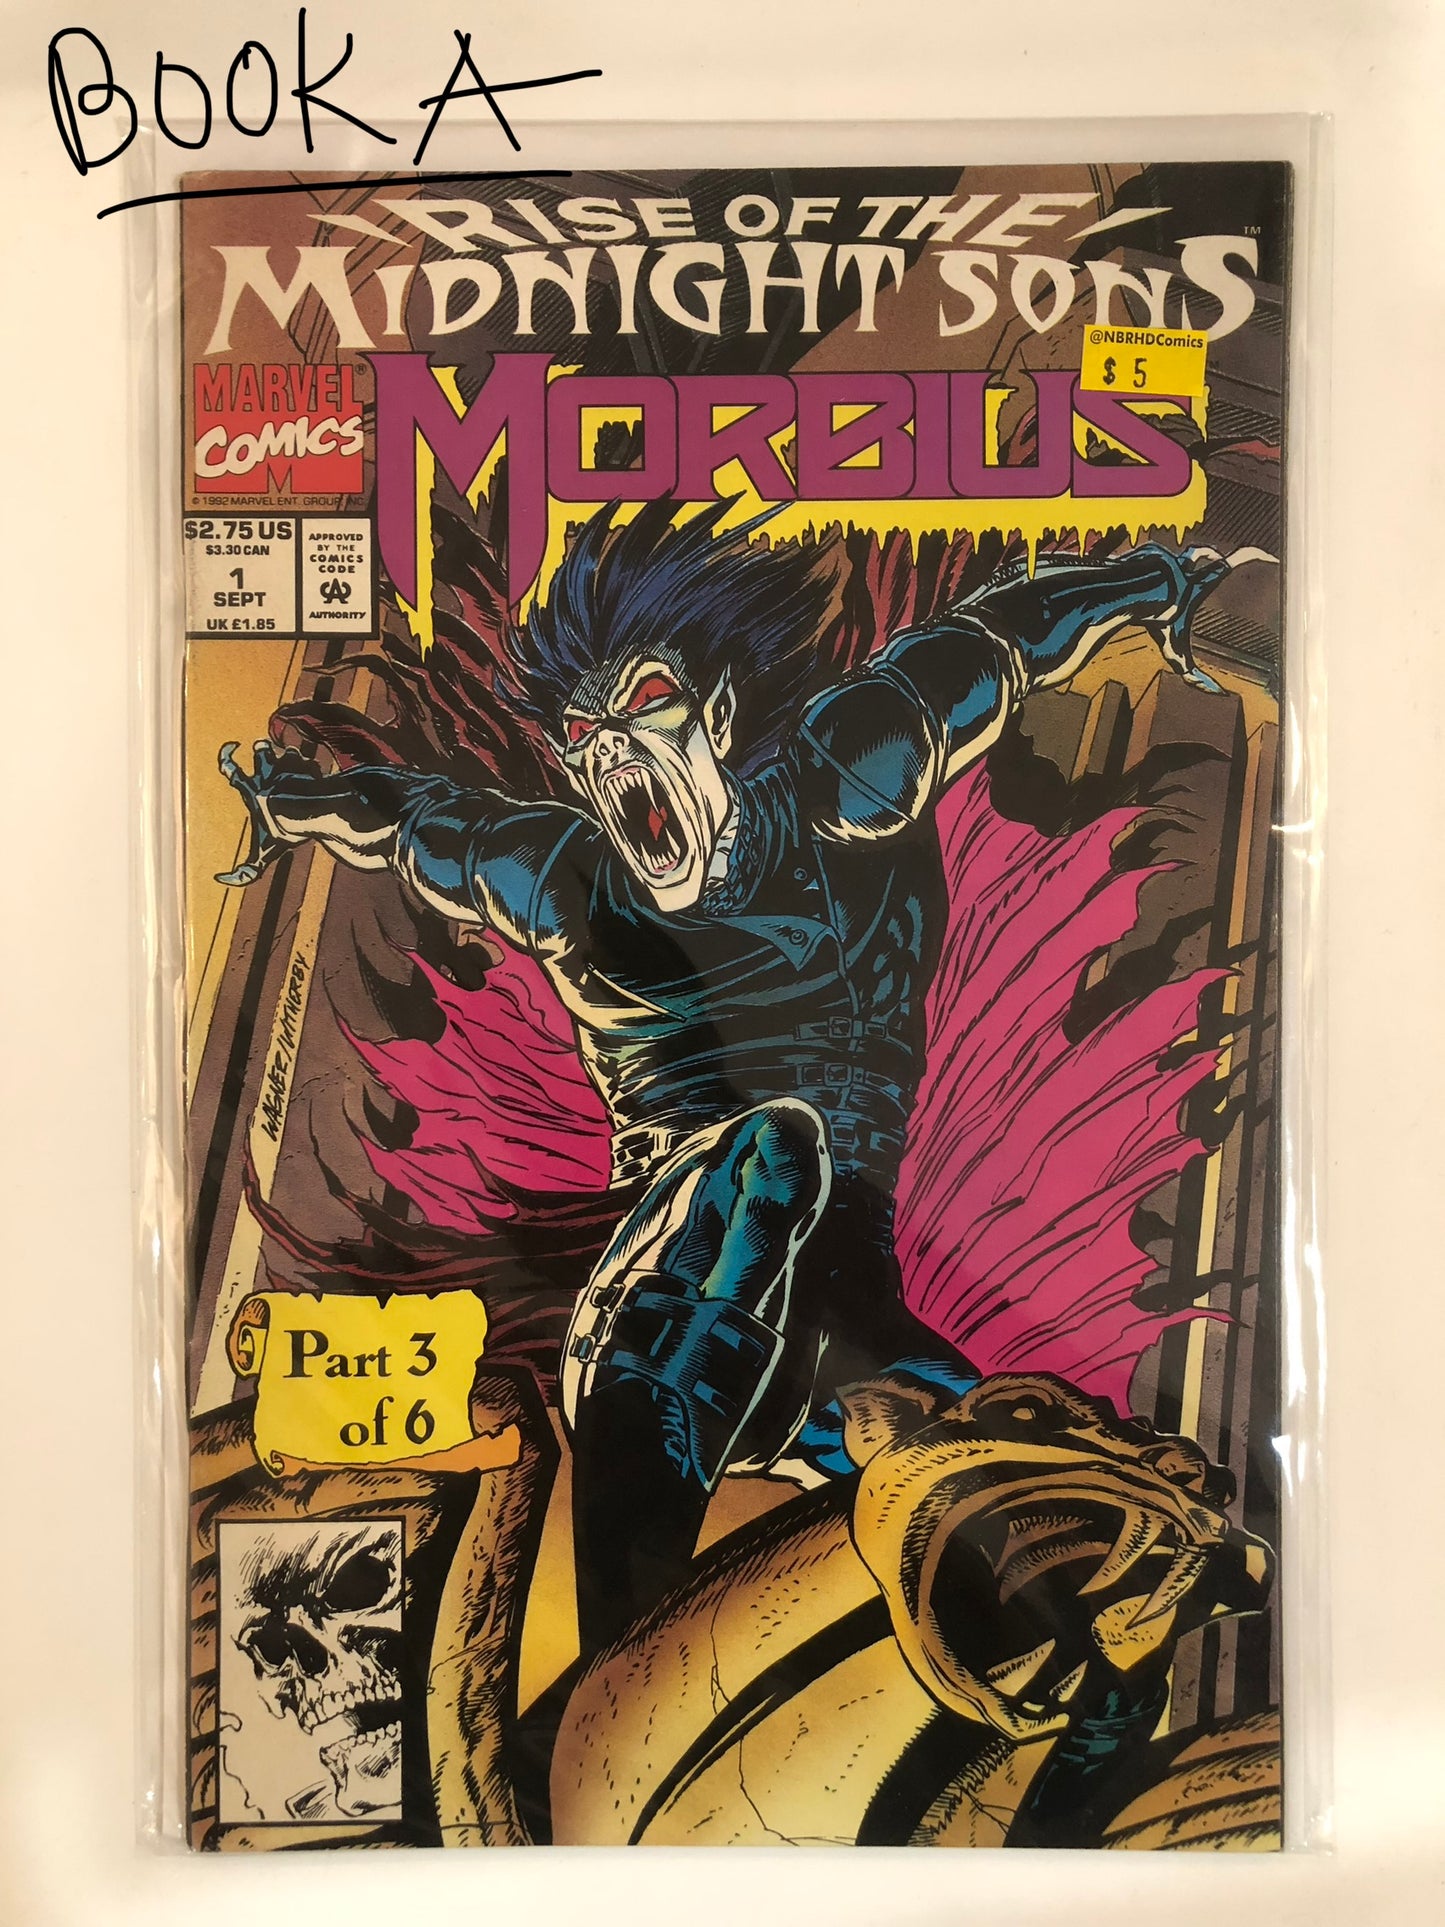 Morbius #3 (of 6)